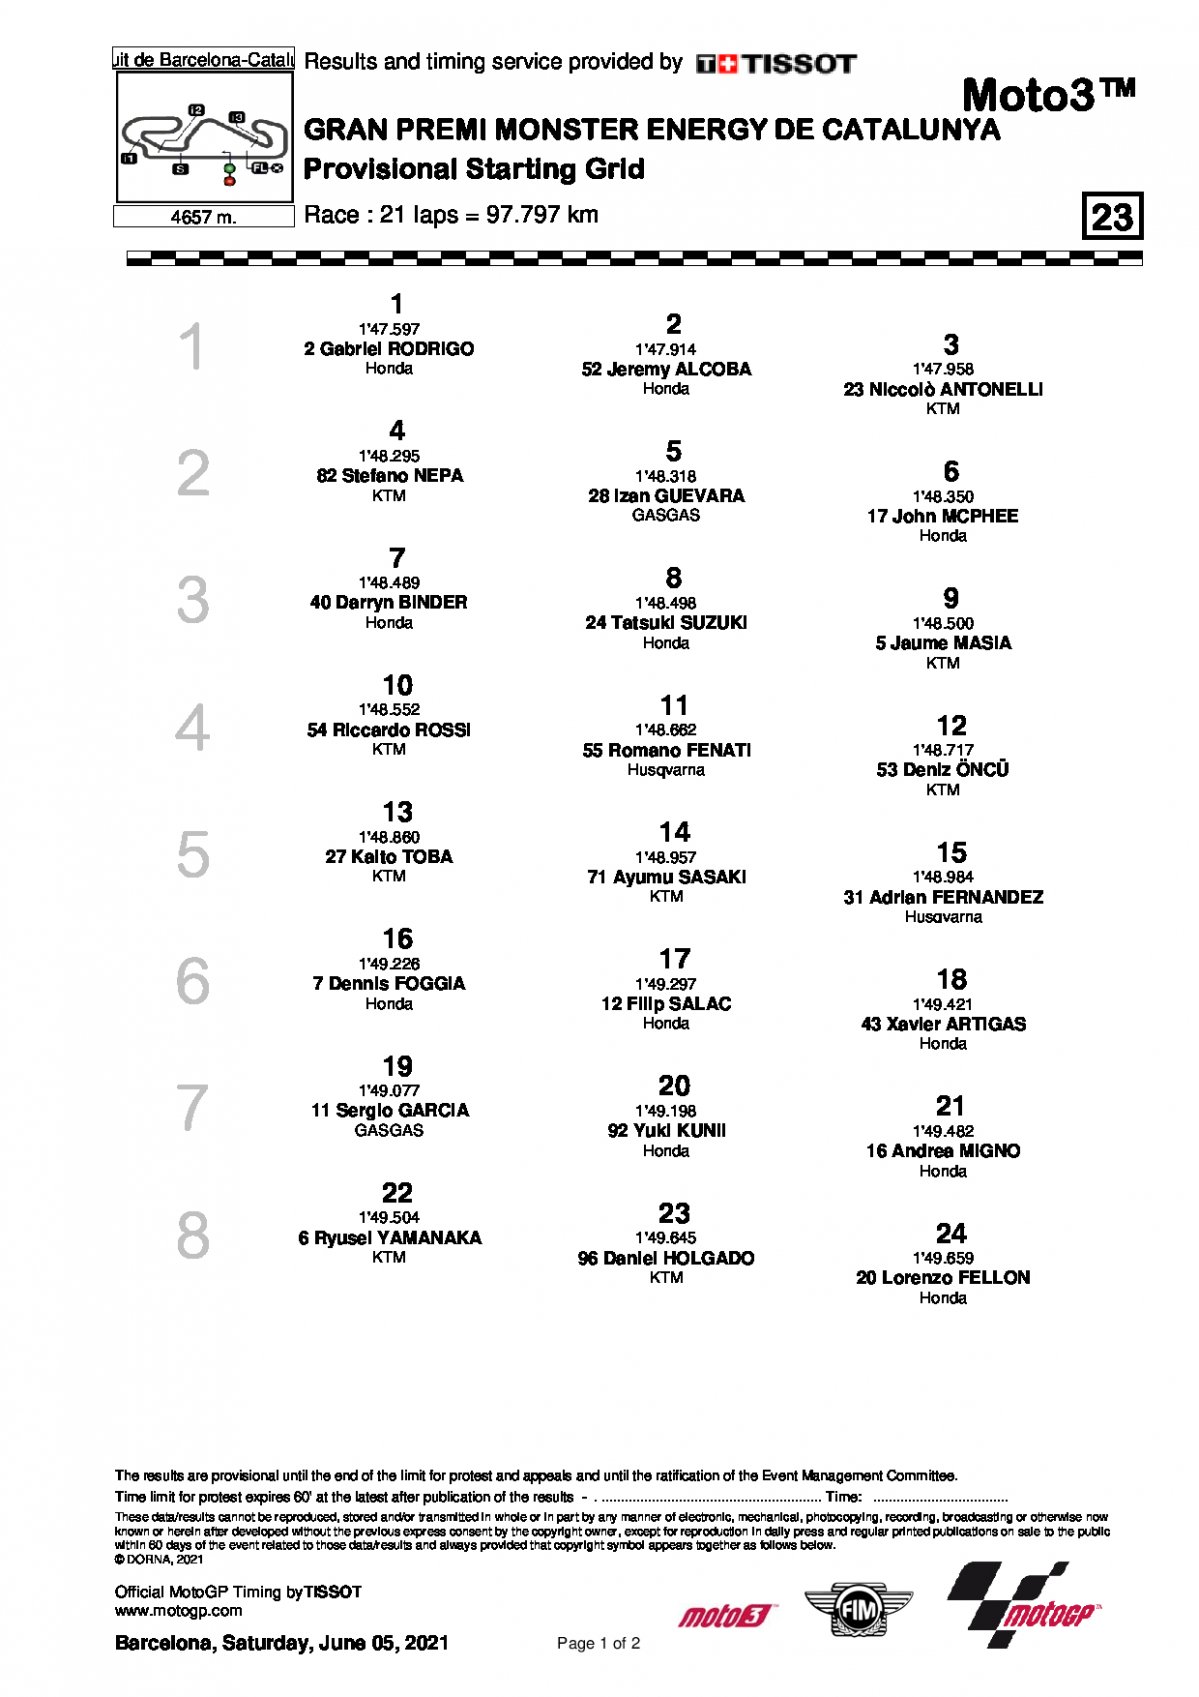 Стартовая решетка Гран-При Каталонии, Moto3 (6/06/2021)